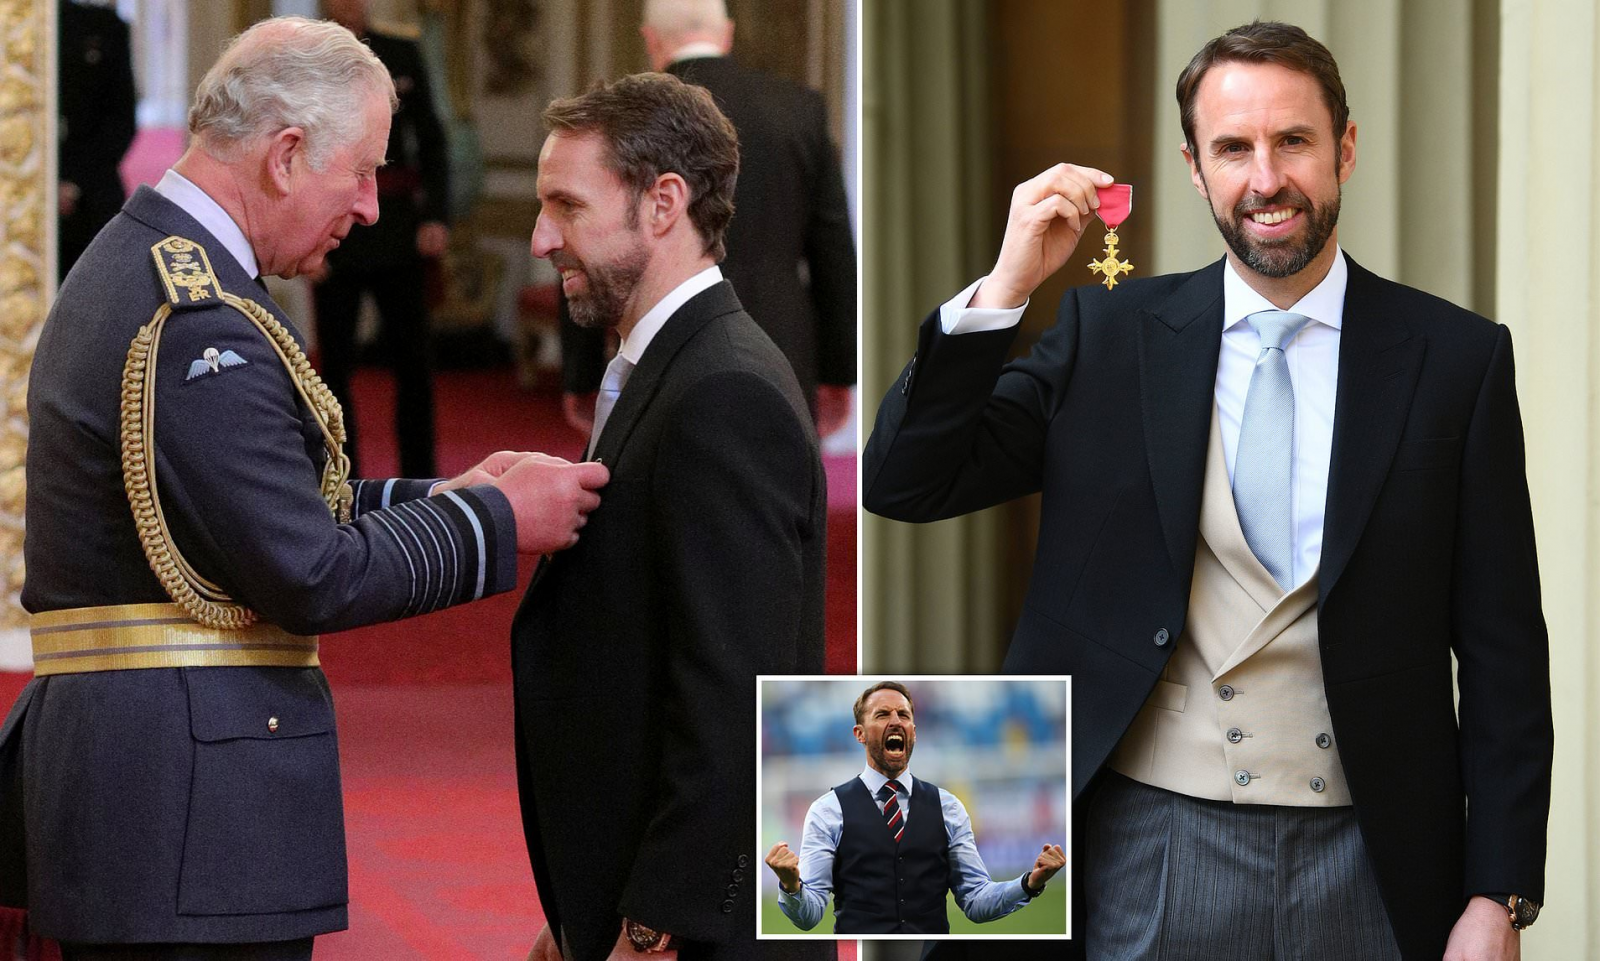 Southgate được trao tặng huân chương OBE (Sĩ quan của Đế chế Anh) vào năm 2019 sau khi đưa Tam Sư lọt vào Bán kết World Cup 2018